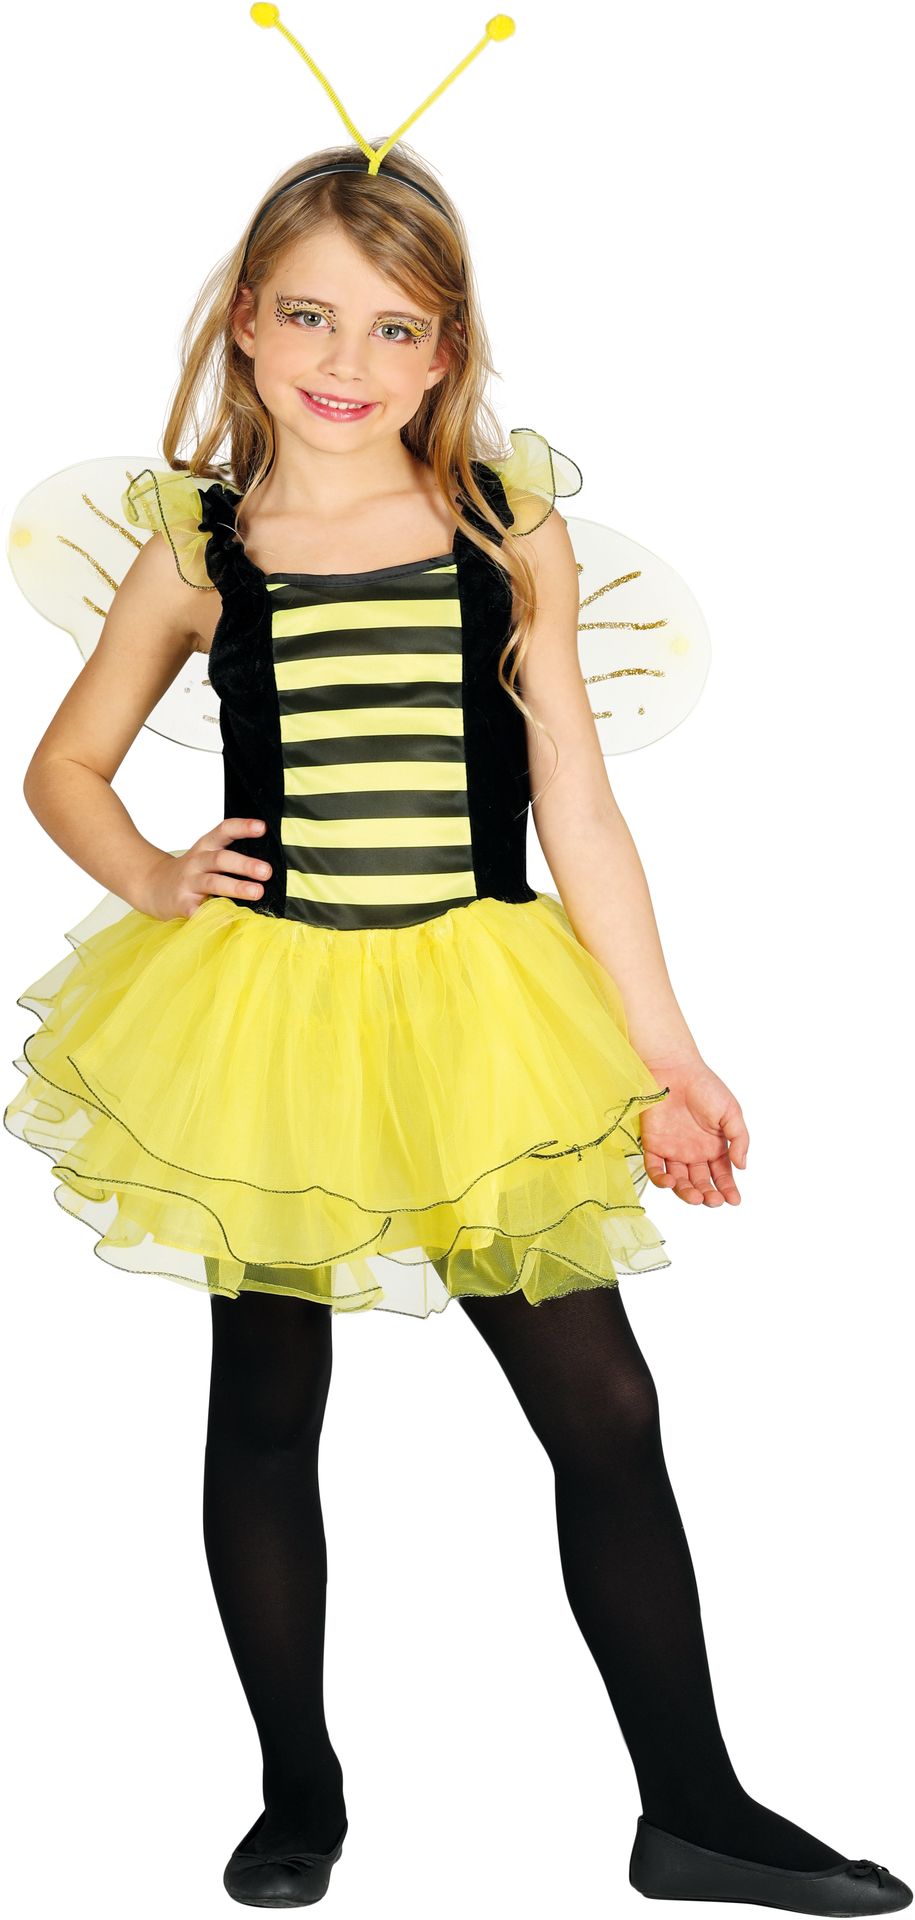 Bijen jurk meisjes